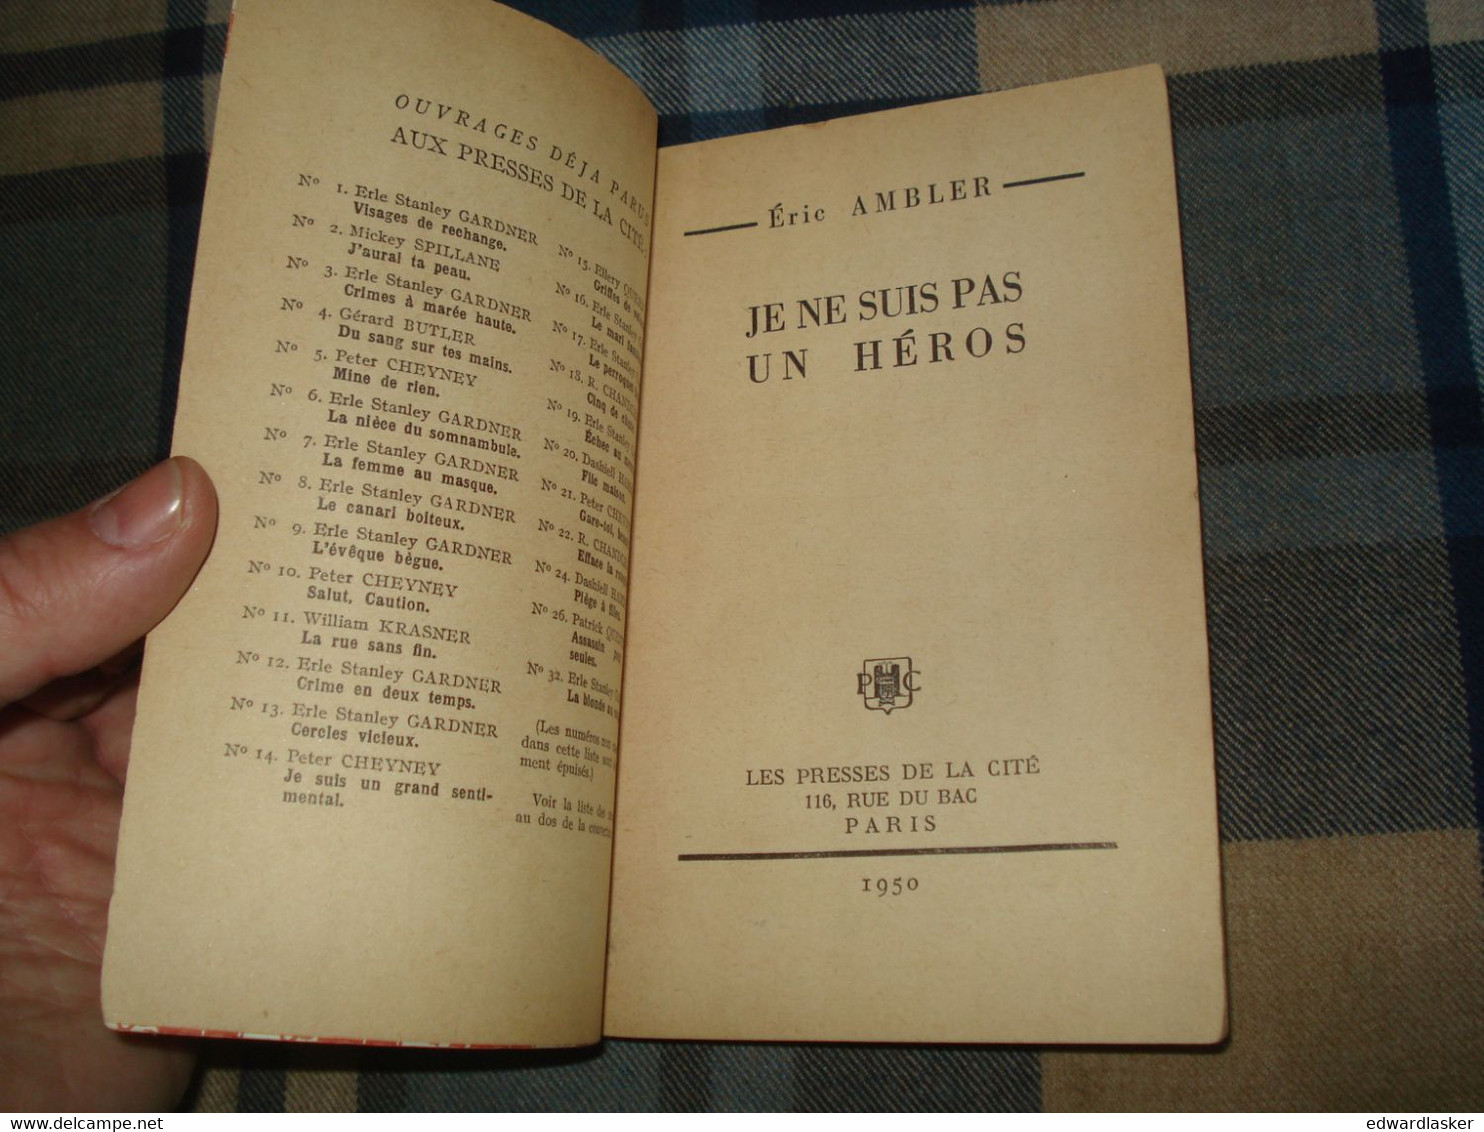 Un MYSTERE N°44 : Je Ne Suis Pas Un HÉROS /Eric AMBLER - Janvier 1951 - Presses De La Cité